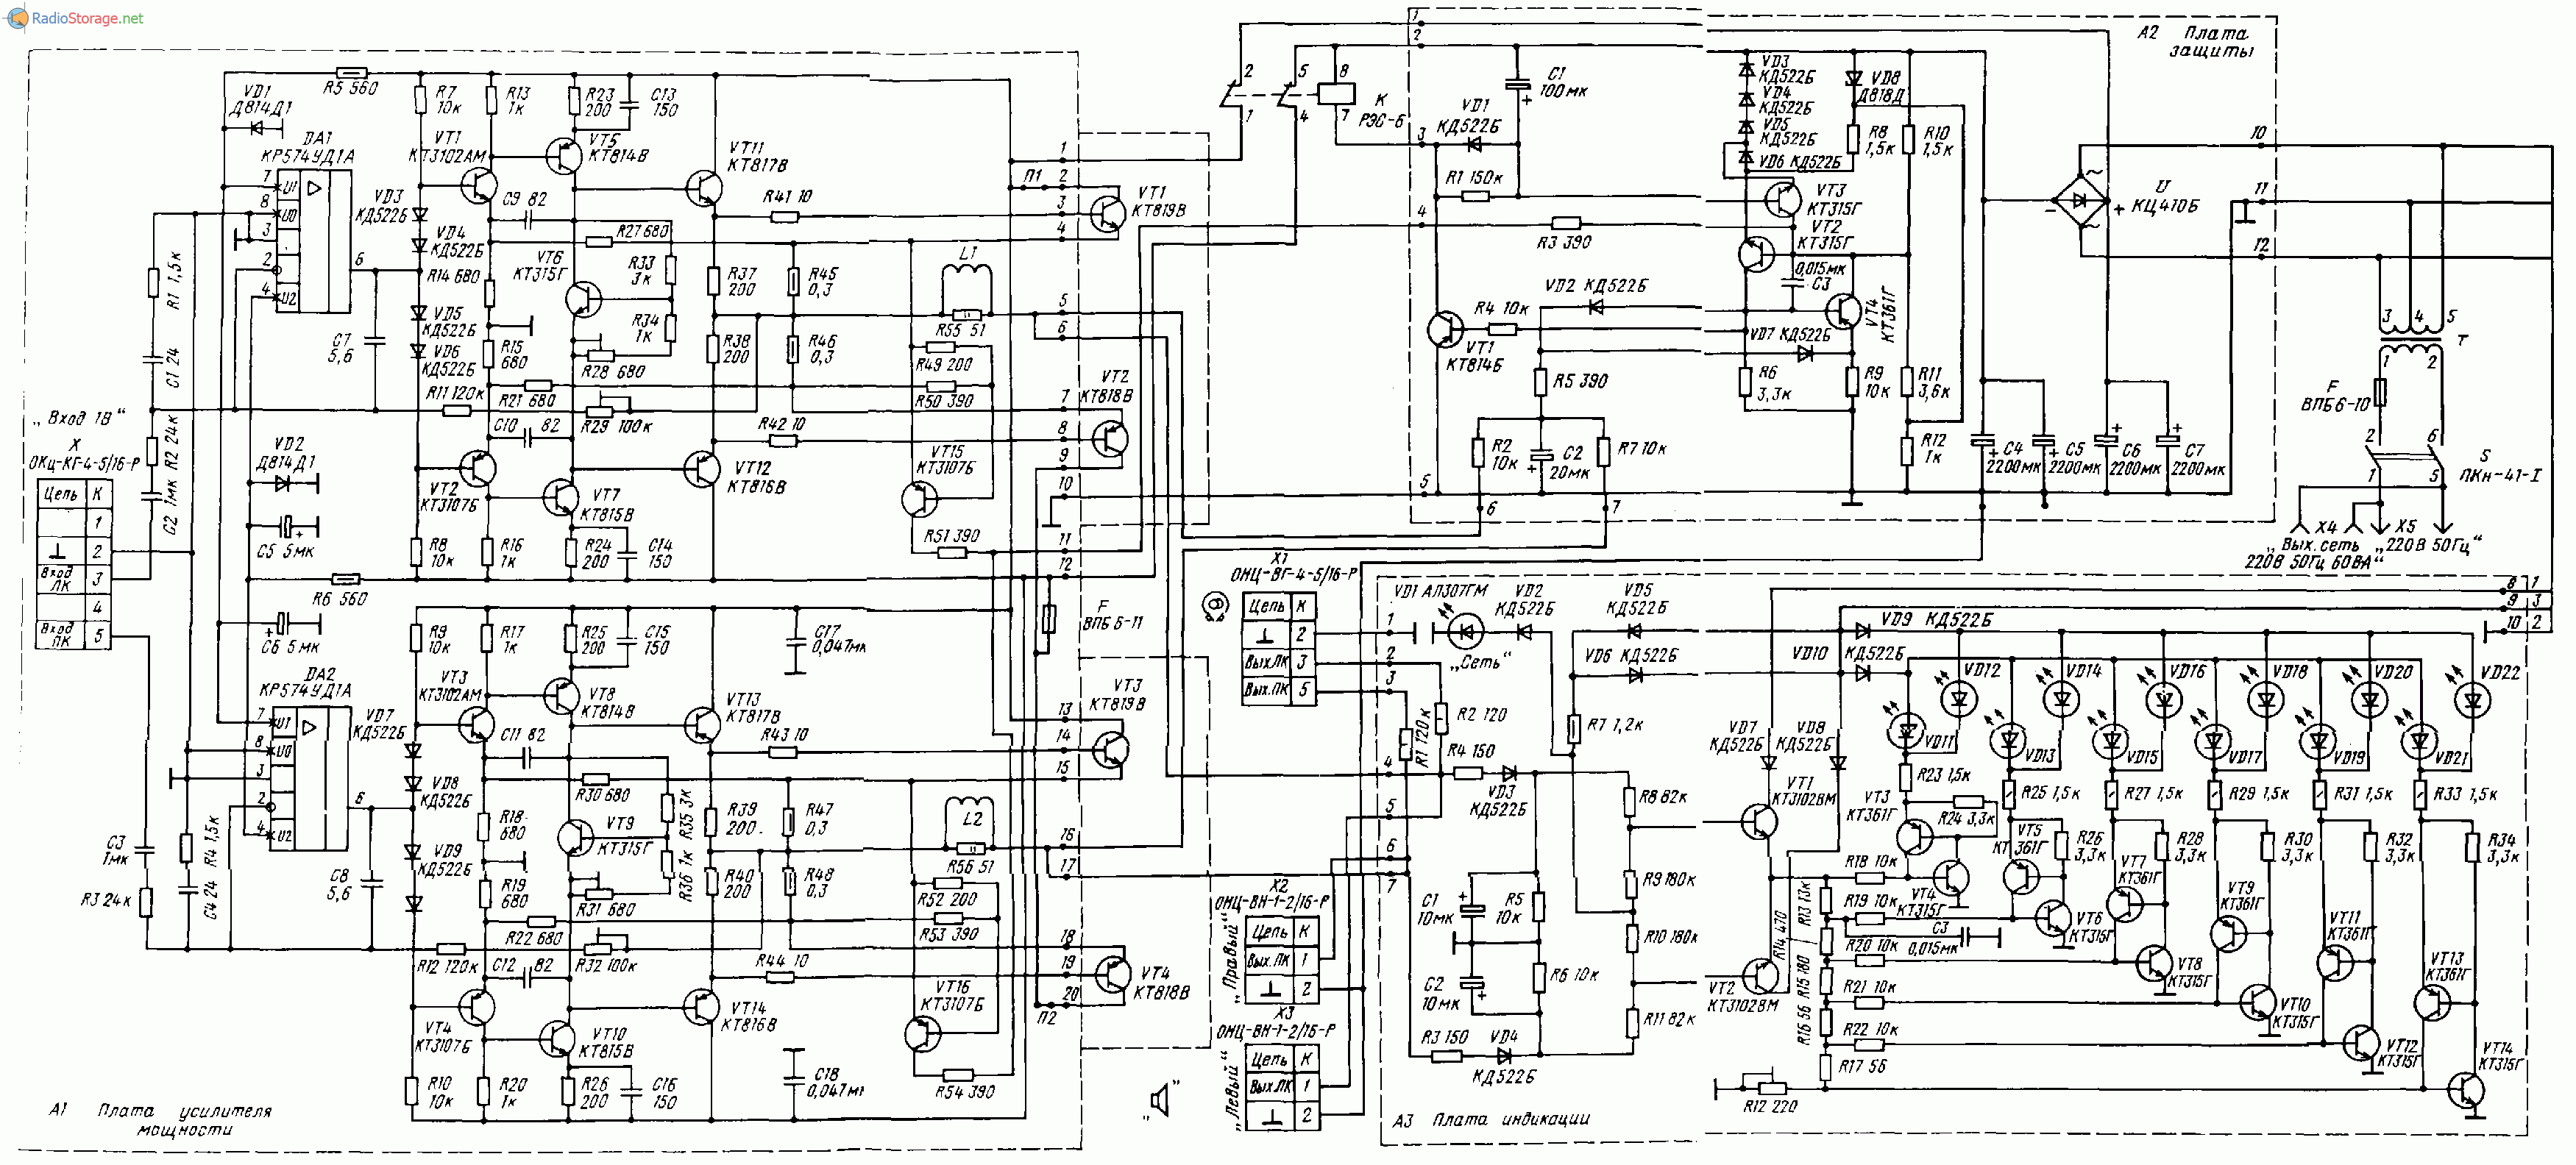 ОДА-102 стерео (тюнер, магнитофон, предусилитель, УМЗЧ), схема